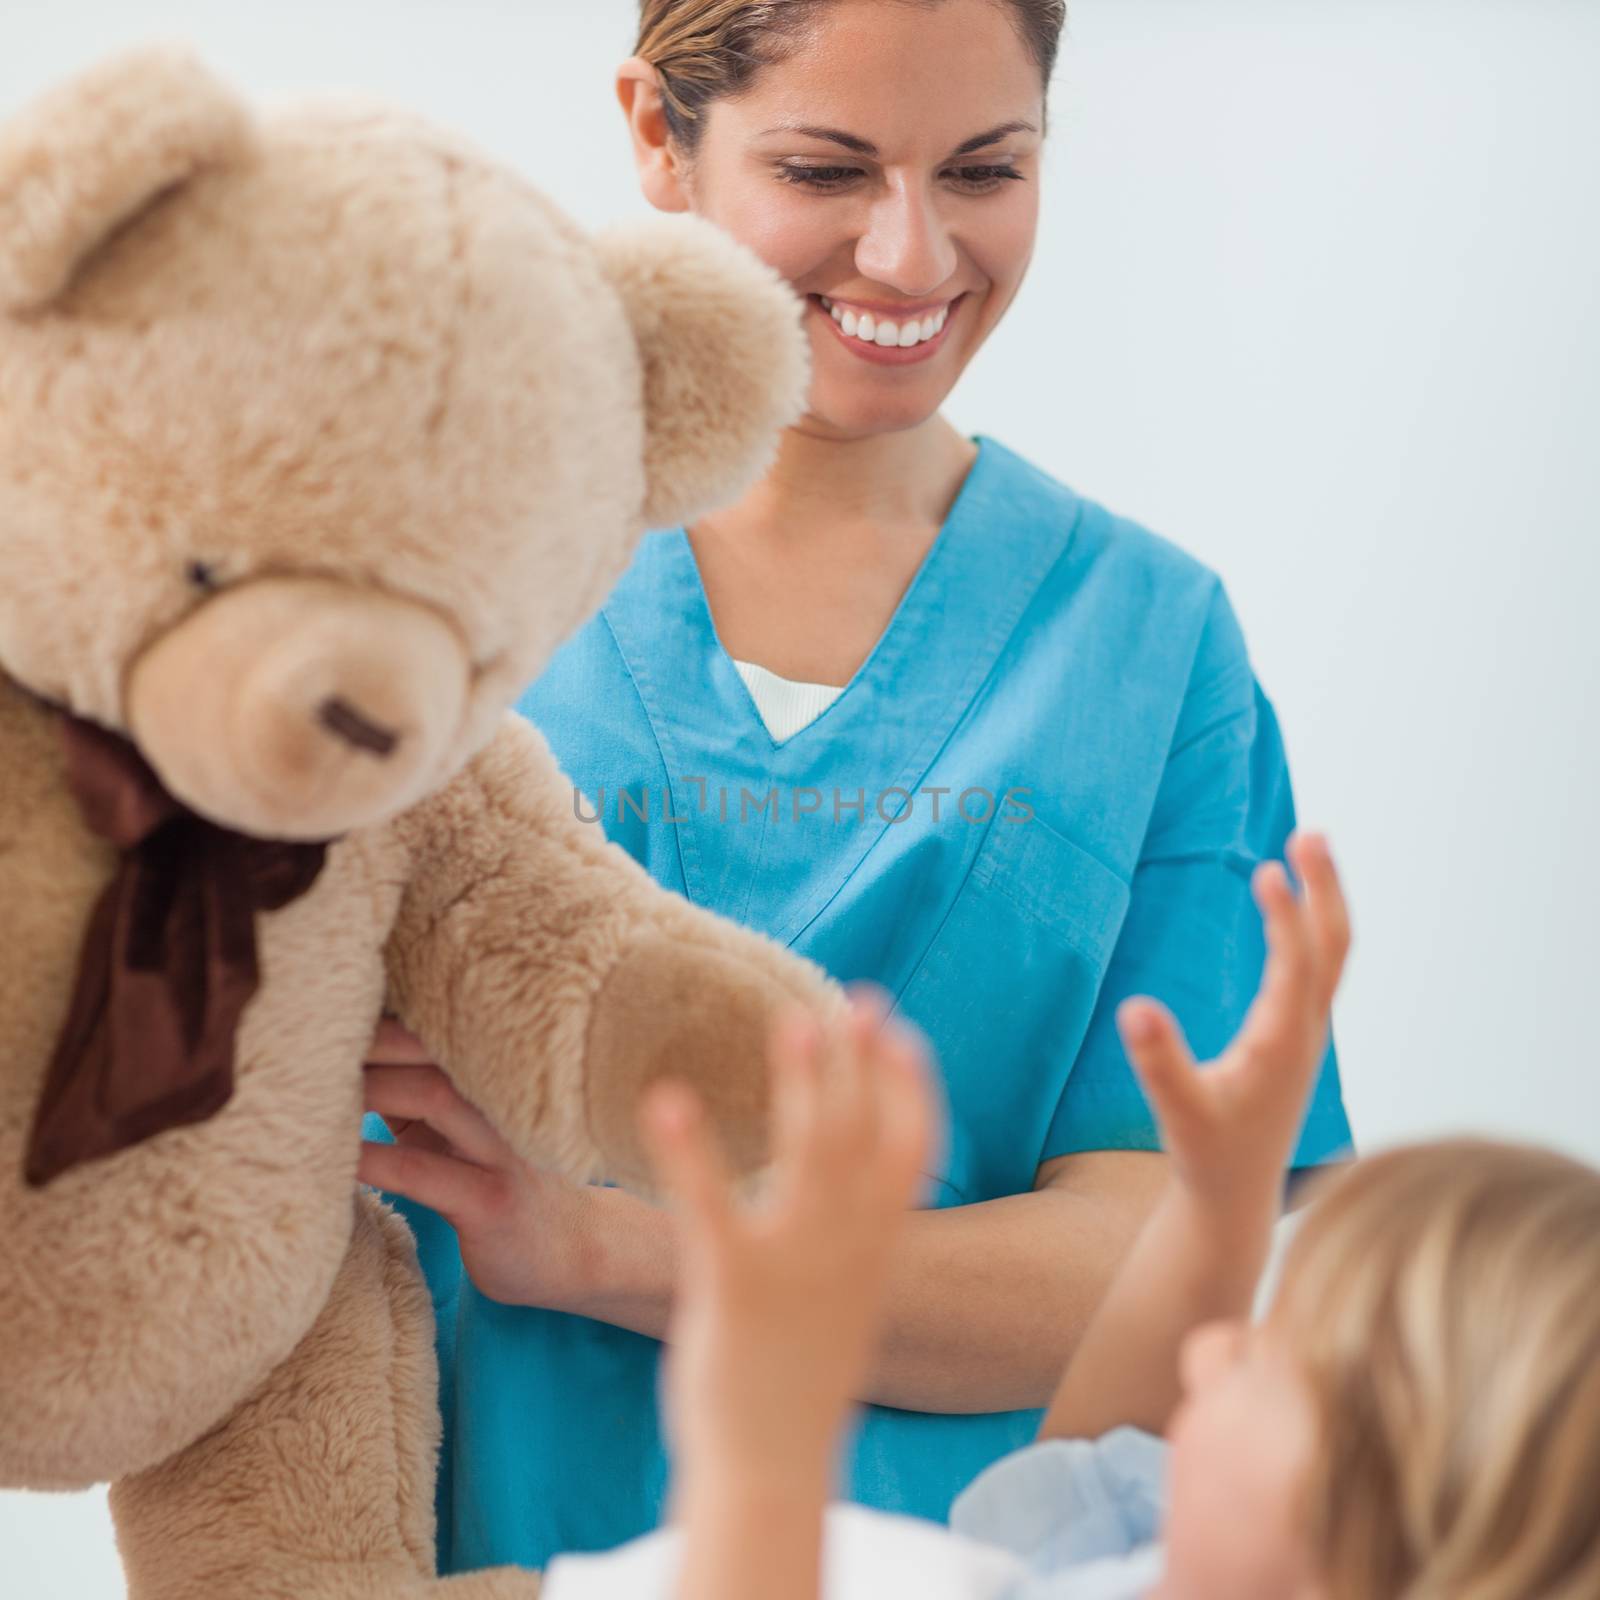 Smiling nurse holding a teddy bear in hospital ward